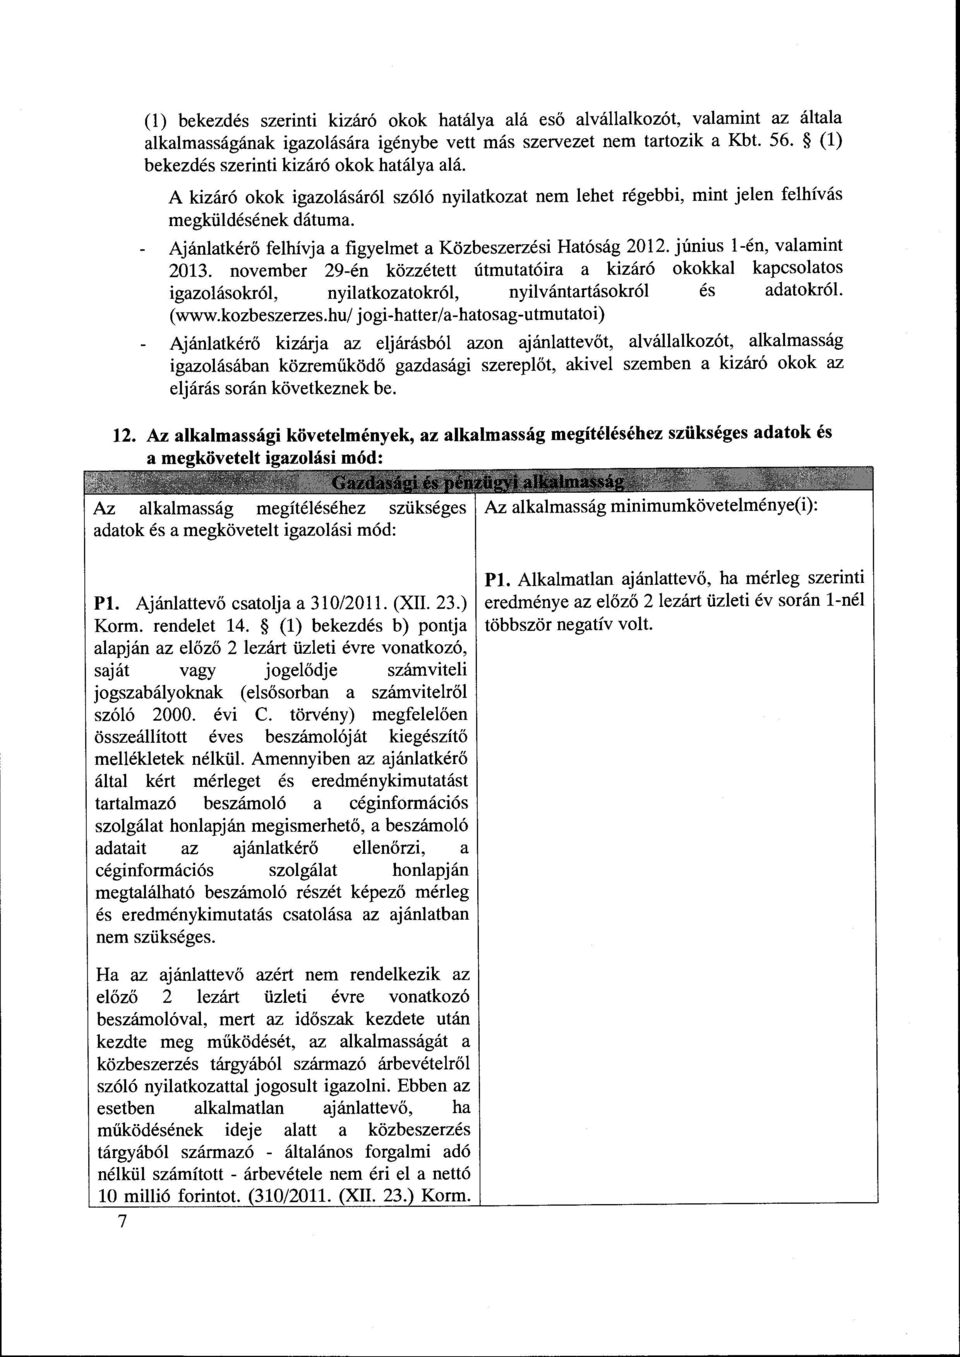 Ajanlatker6 felhivja a figyelmet a Kozbeszerzesi Hat6sag 2012. Junius l-en, valamint 2013.